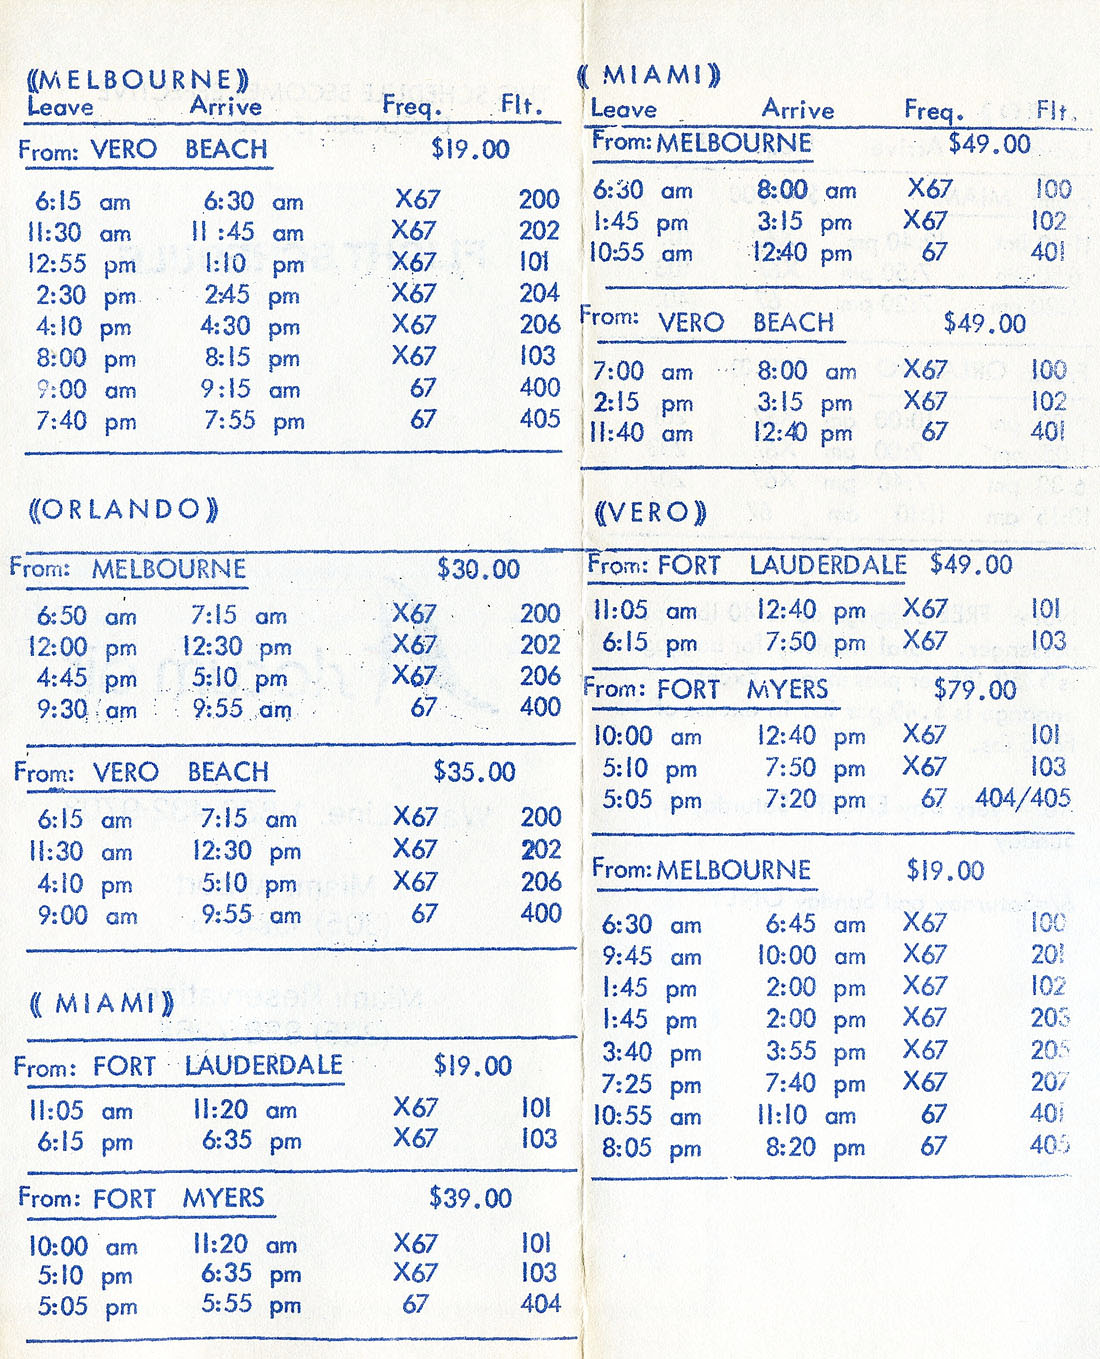 Slocum Air timetable